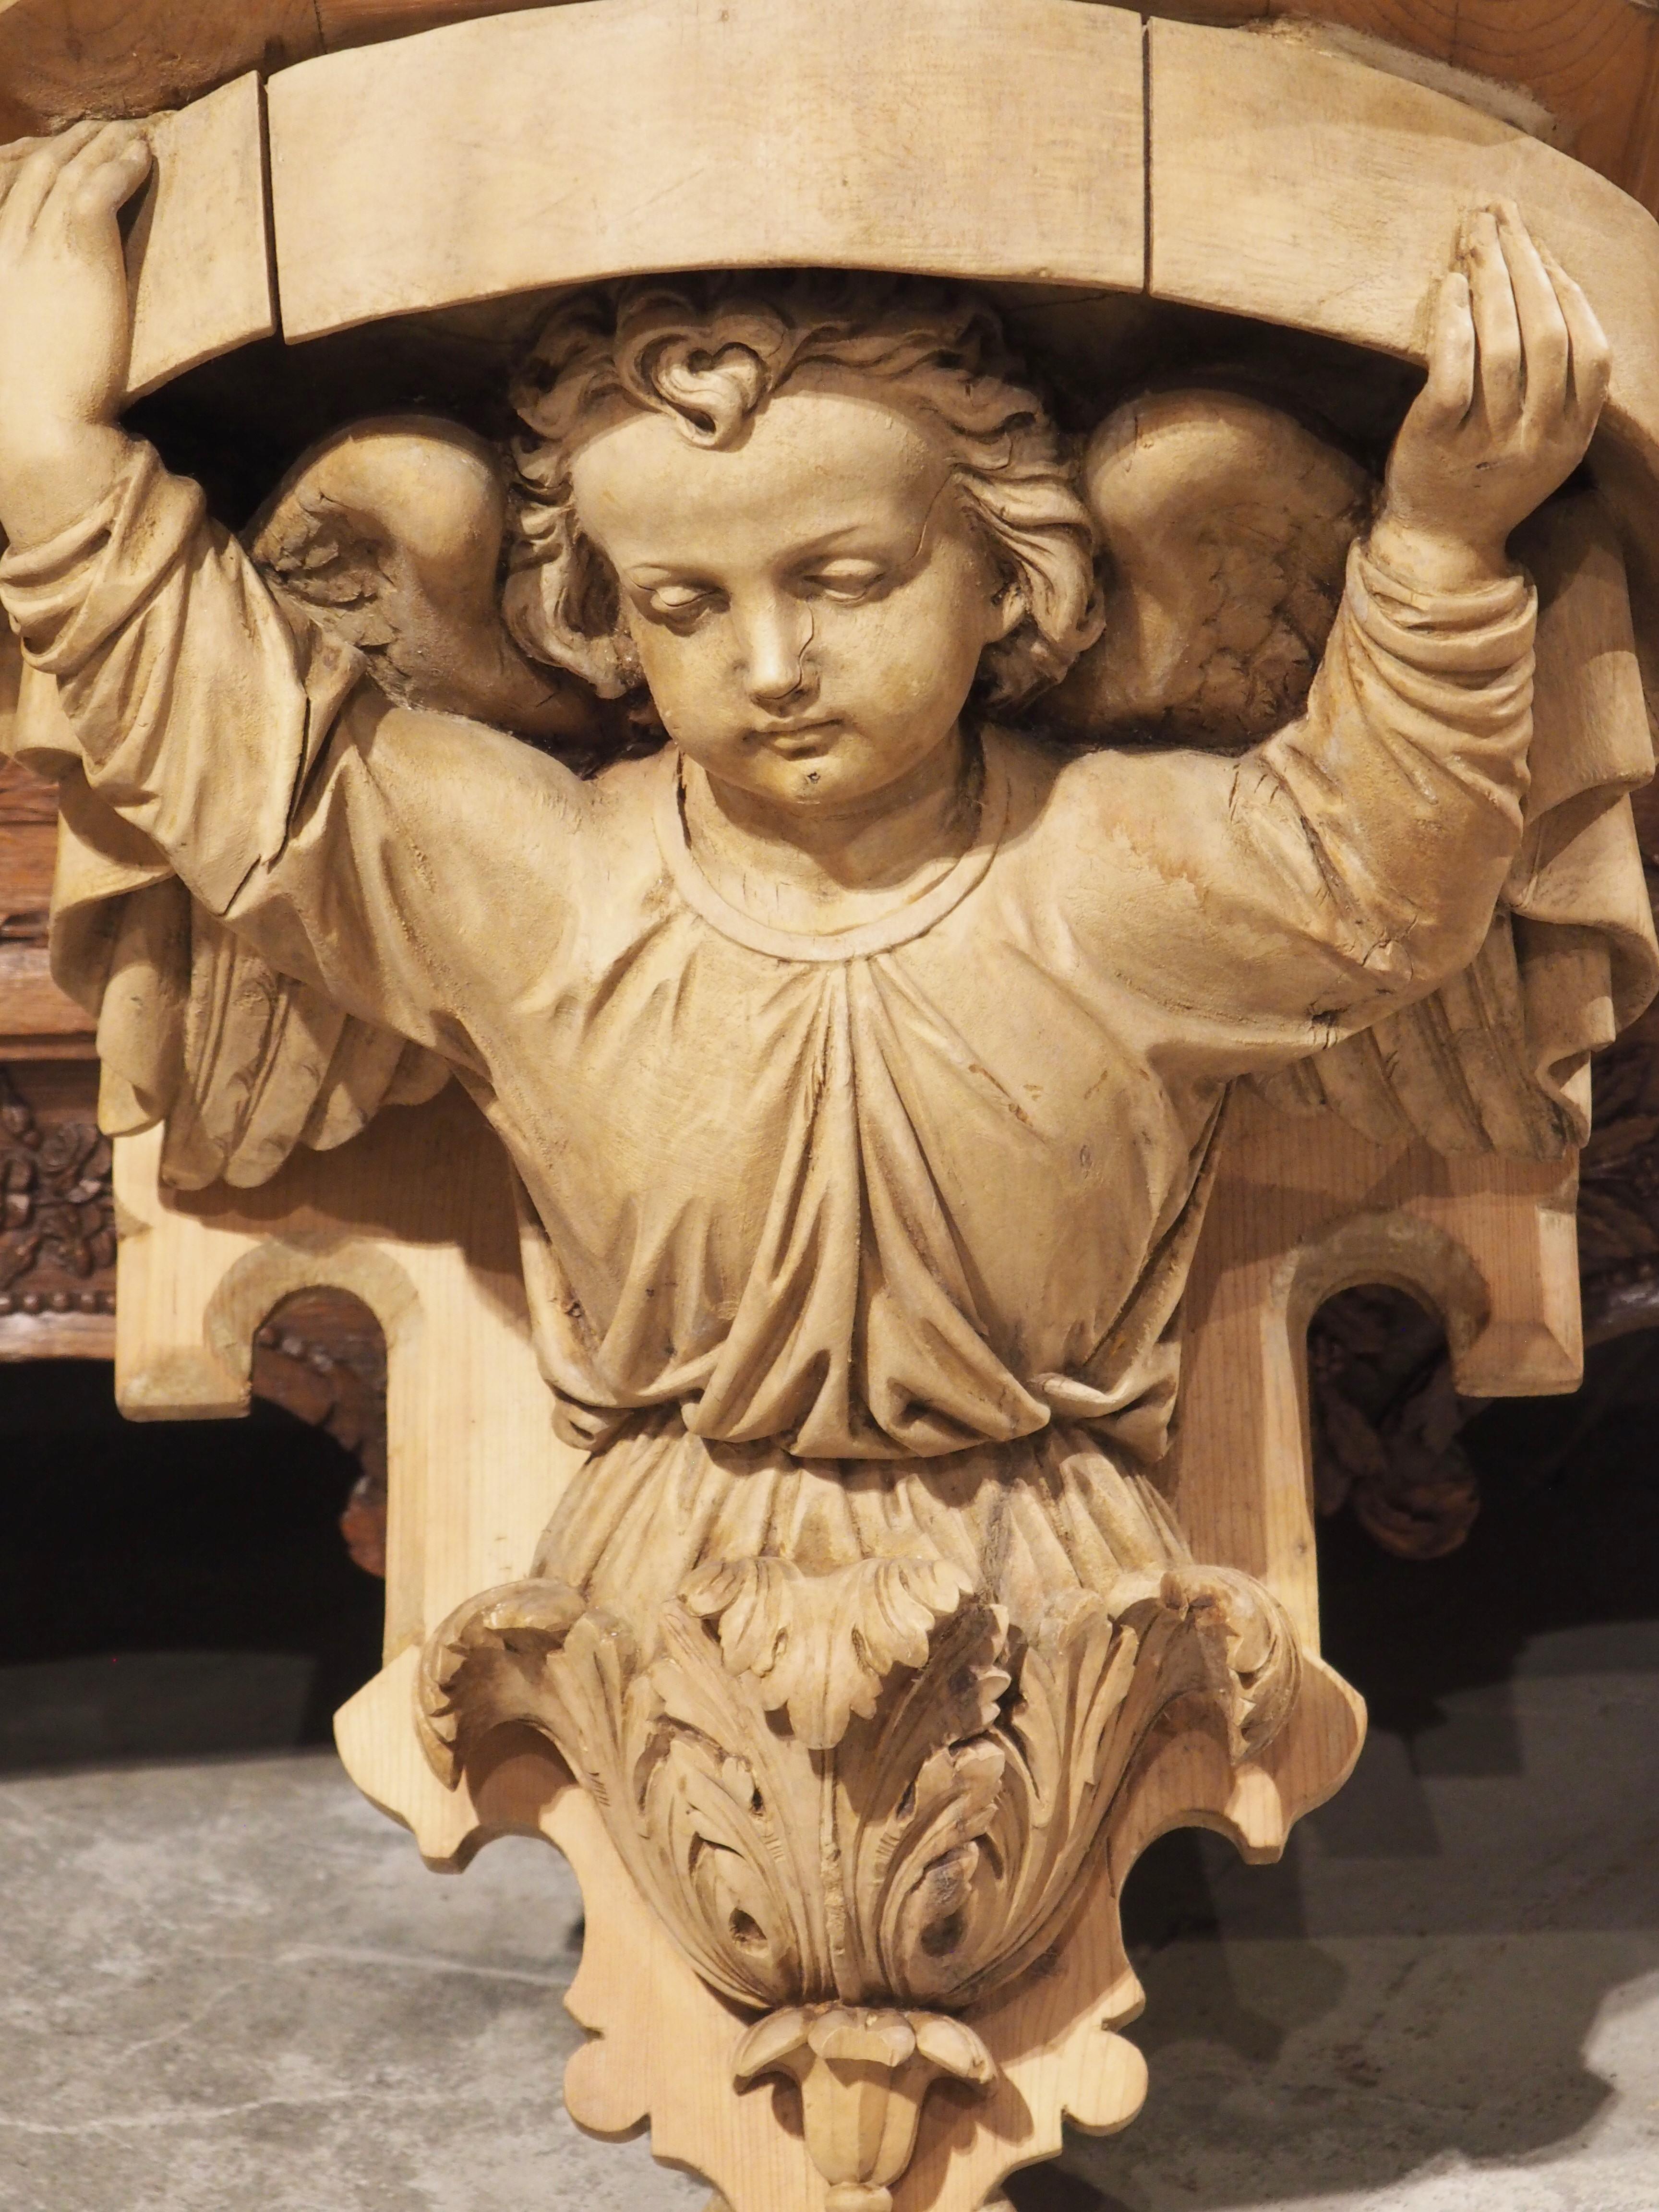 Diese um 1880 in Frankreich handgeschnitzte Konsole aus Holz zeigt einen wunderschön ausgeführten geflügelten Engel unter einem kantigen Gebälk. Das unschuldige Antlitz des Engels wird durch den nach unten gerichteten Blick noch verstärkt, da er